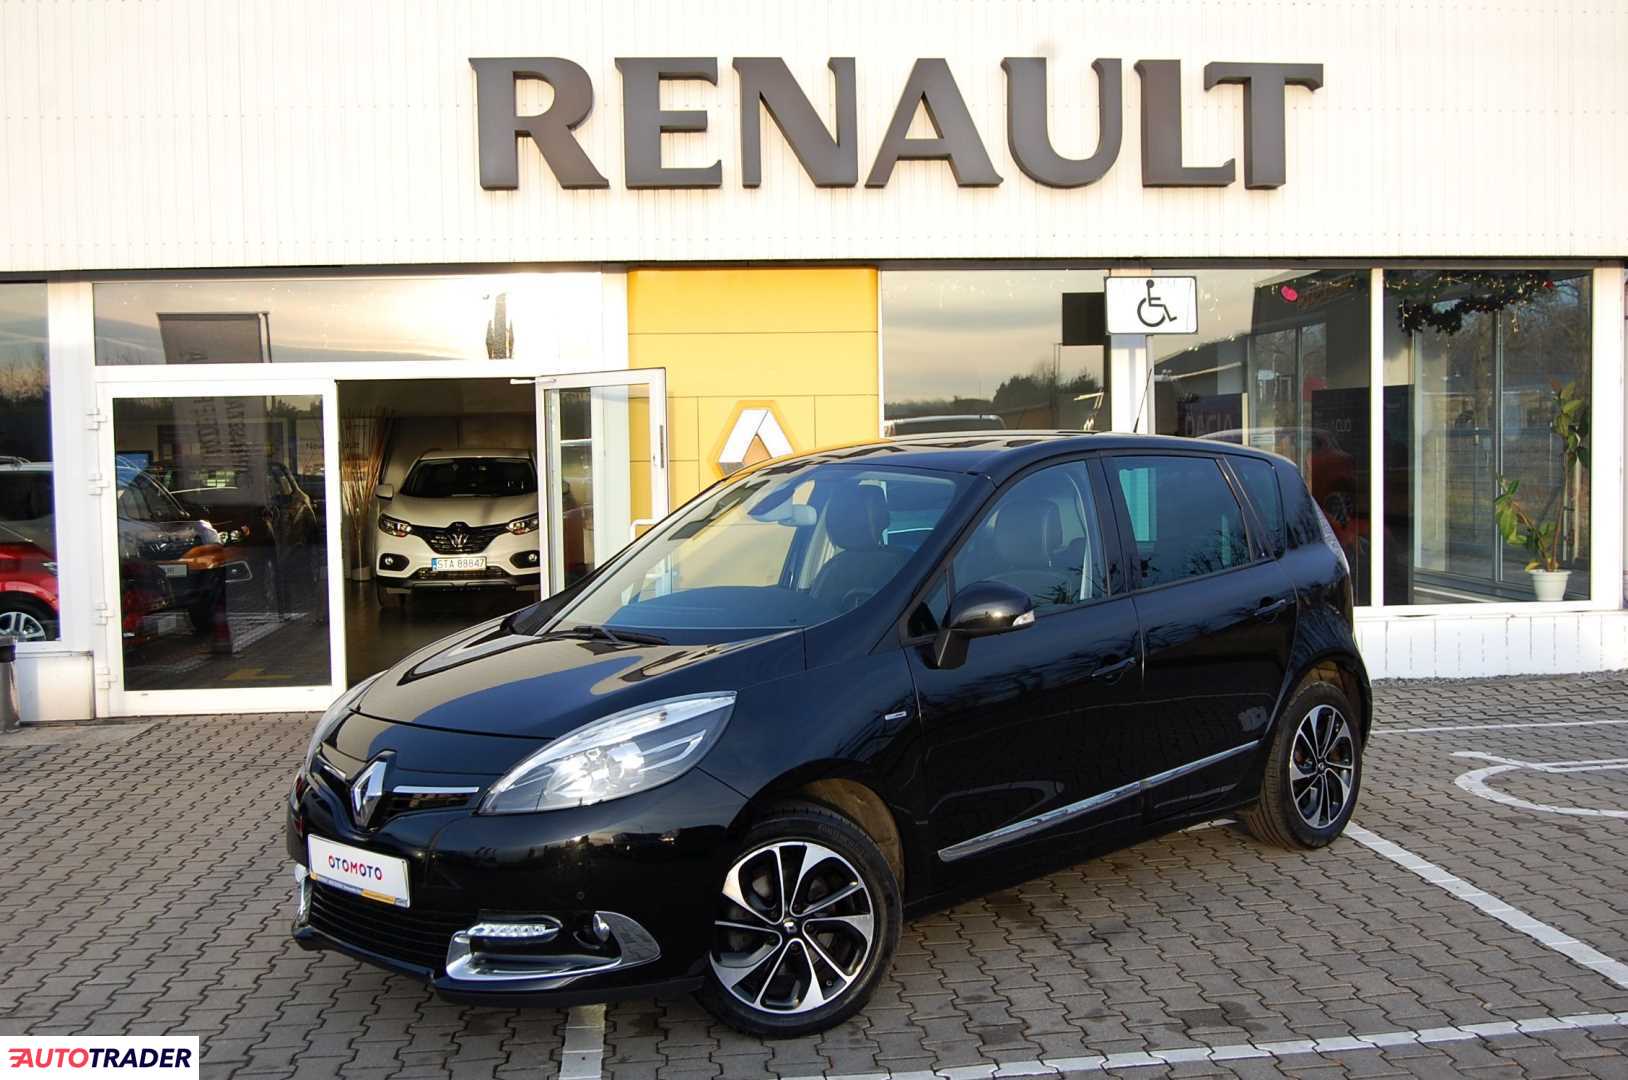 Renault Scenic 1.2 benzyna 130 KM 2015r. (Tarnowskie Góry